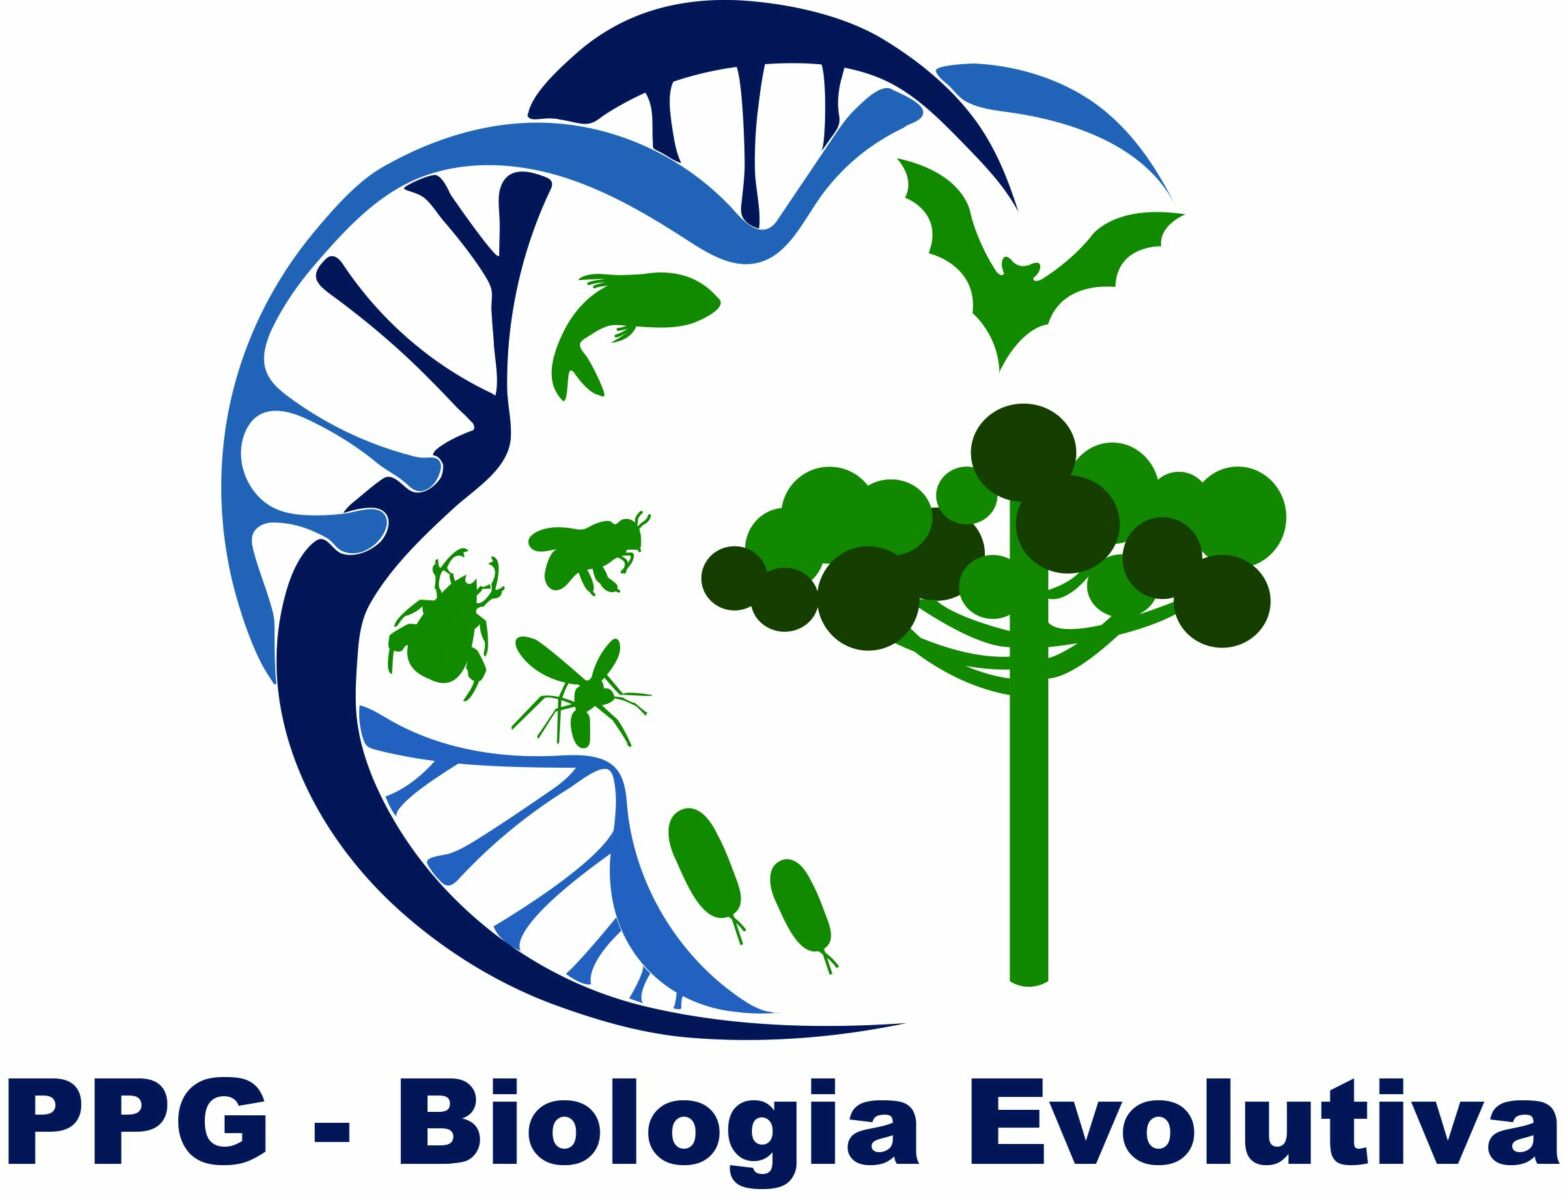 Mestrado em Biologia Evolutiva está com inscrições abertas para a turma 2021